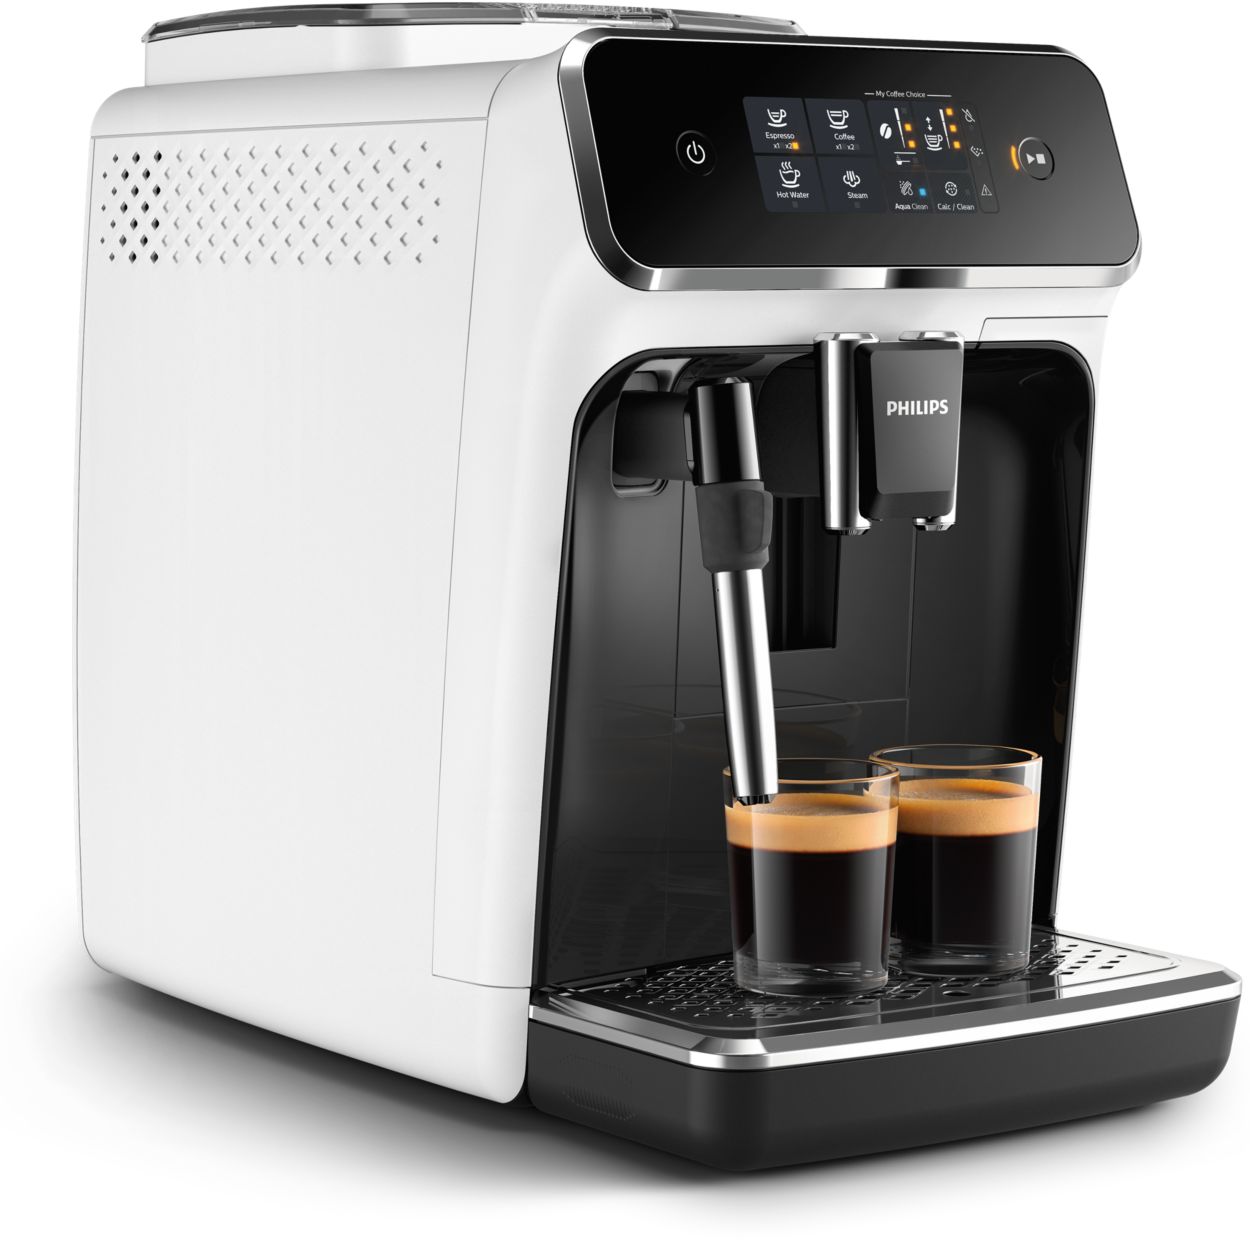 Philips : Machines à café, Cafetières et Produits d'entretien